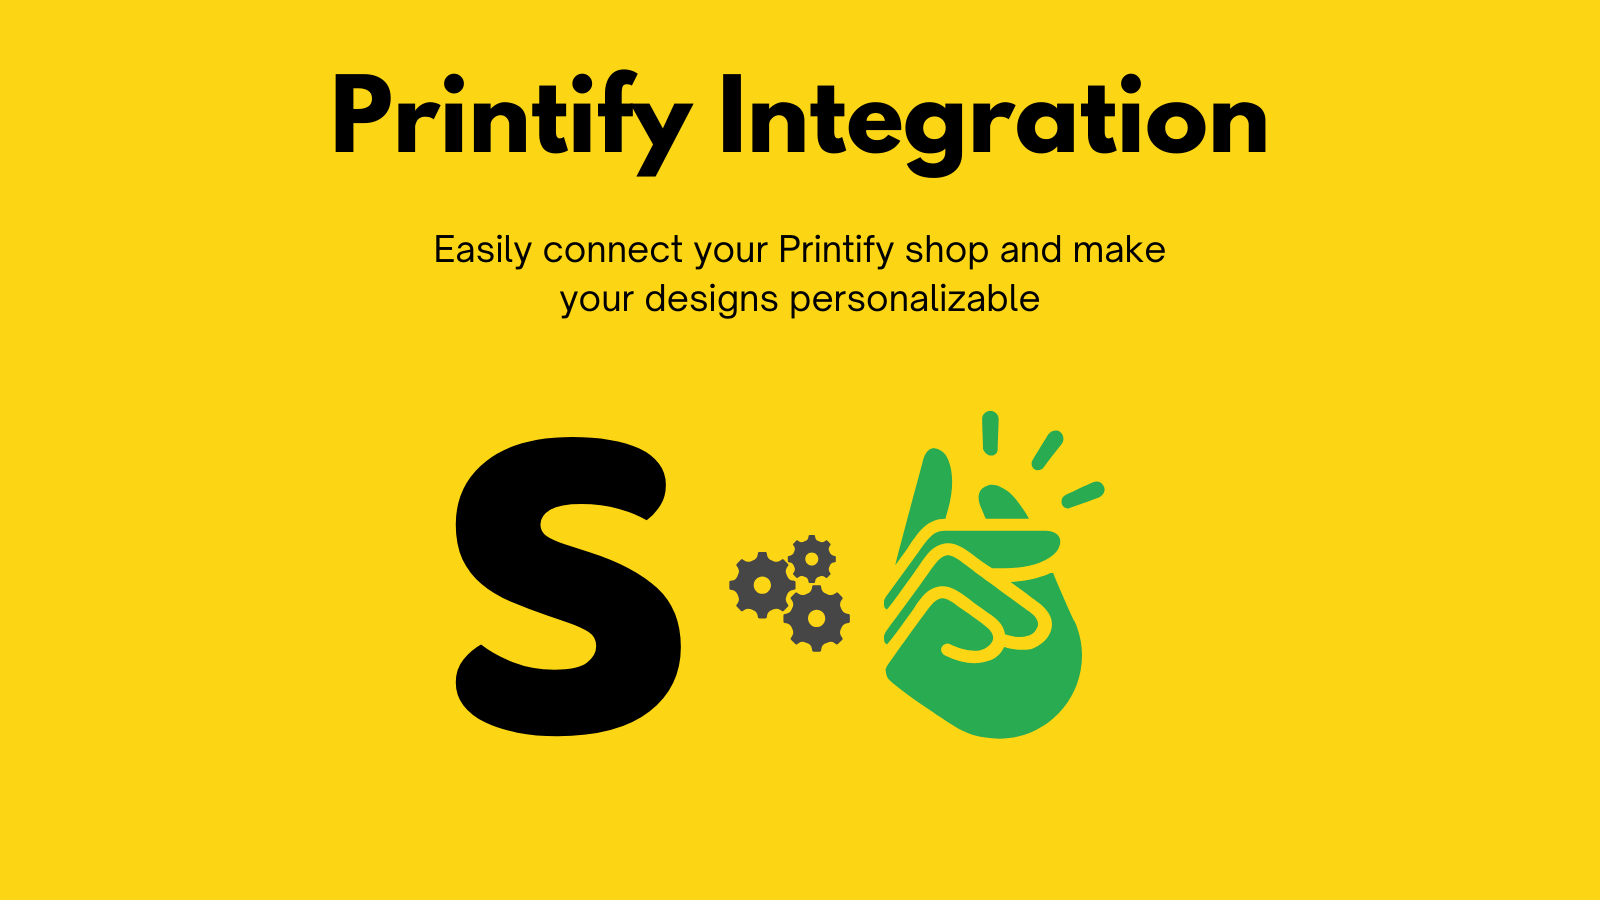 Integración con Printify utilizando SnapArt para pedidos personalizados